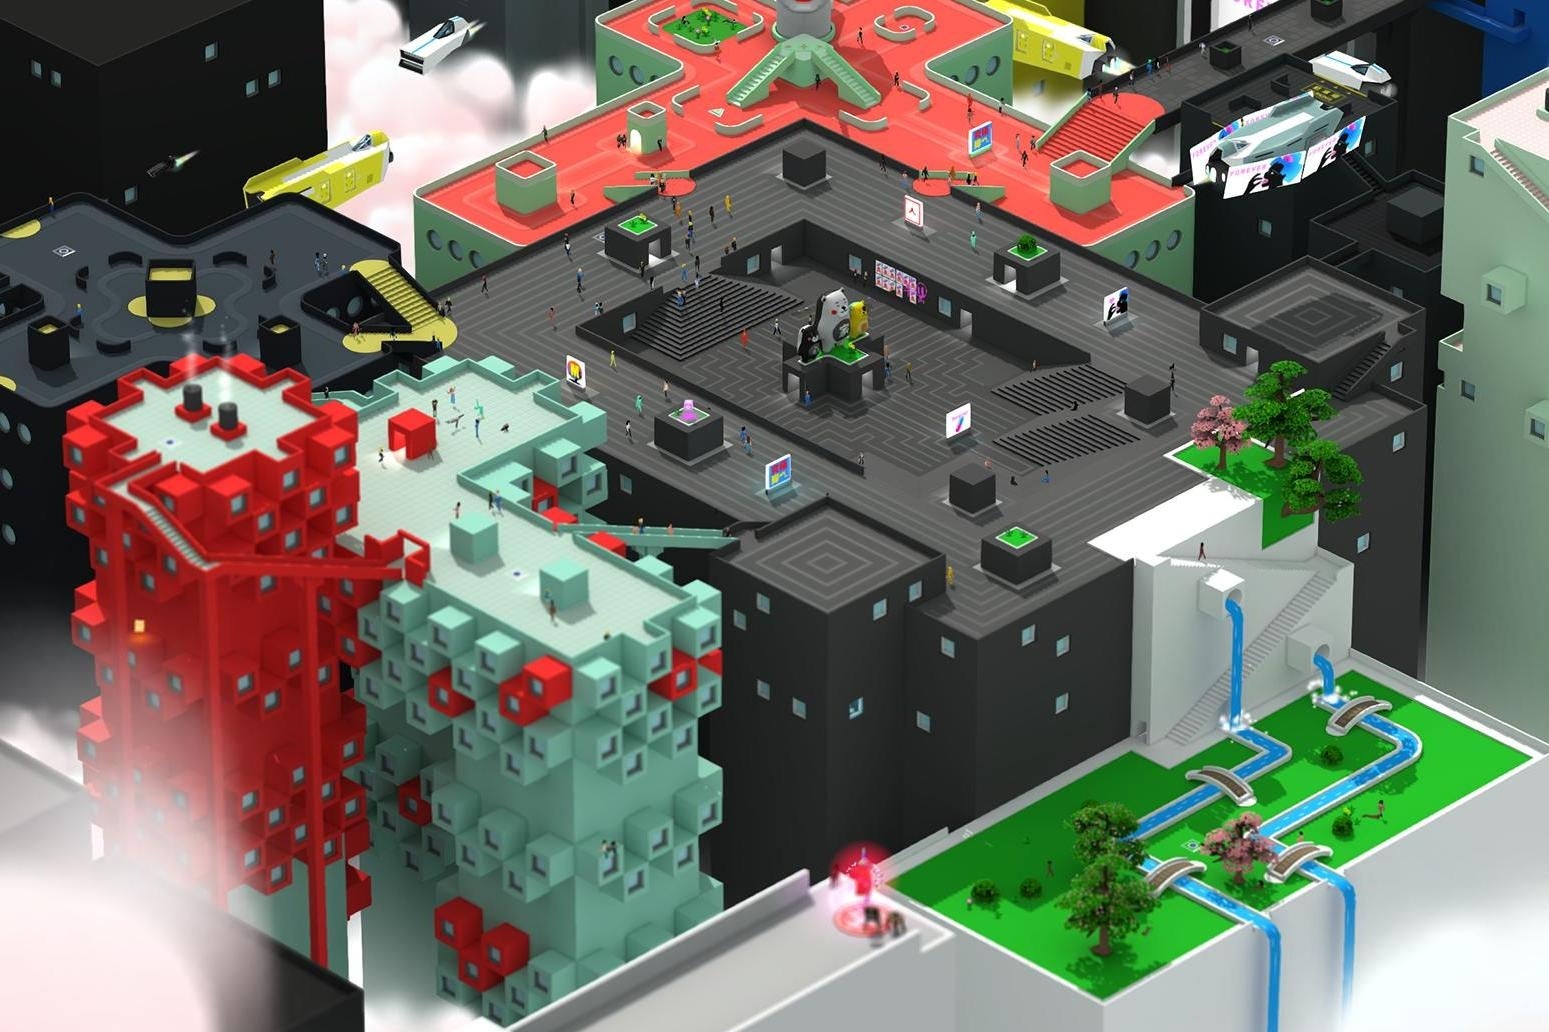 Afbeeldingen van Tokyo 42 multiplayer gameplay onthuld